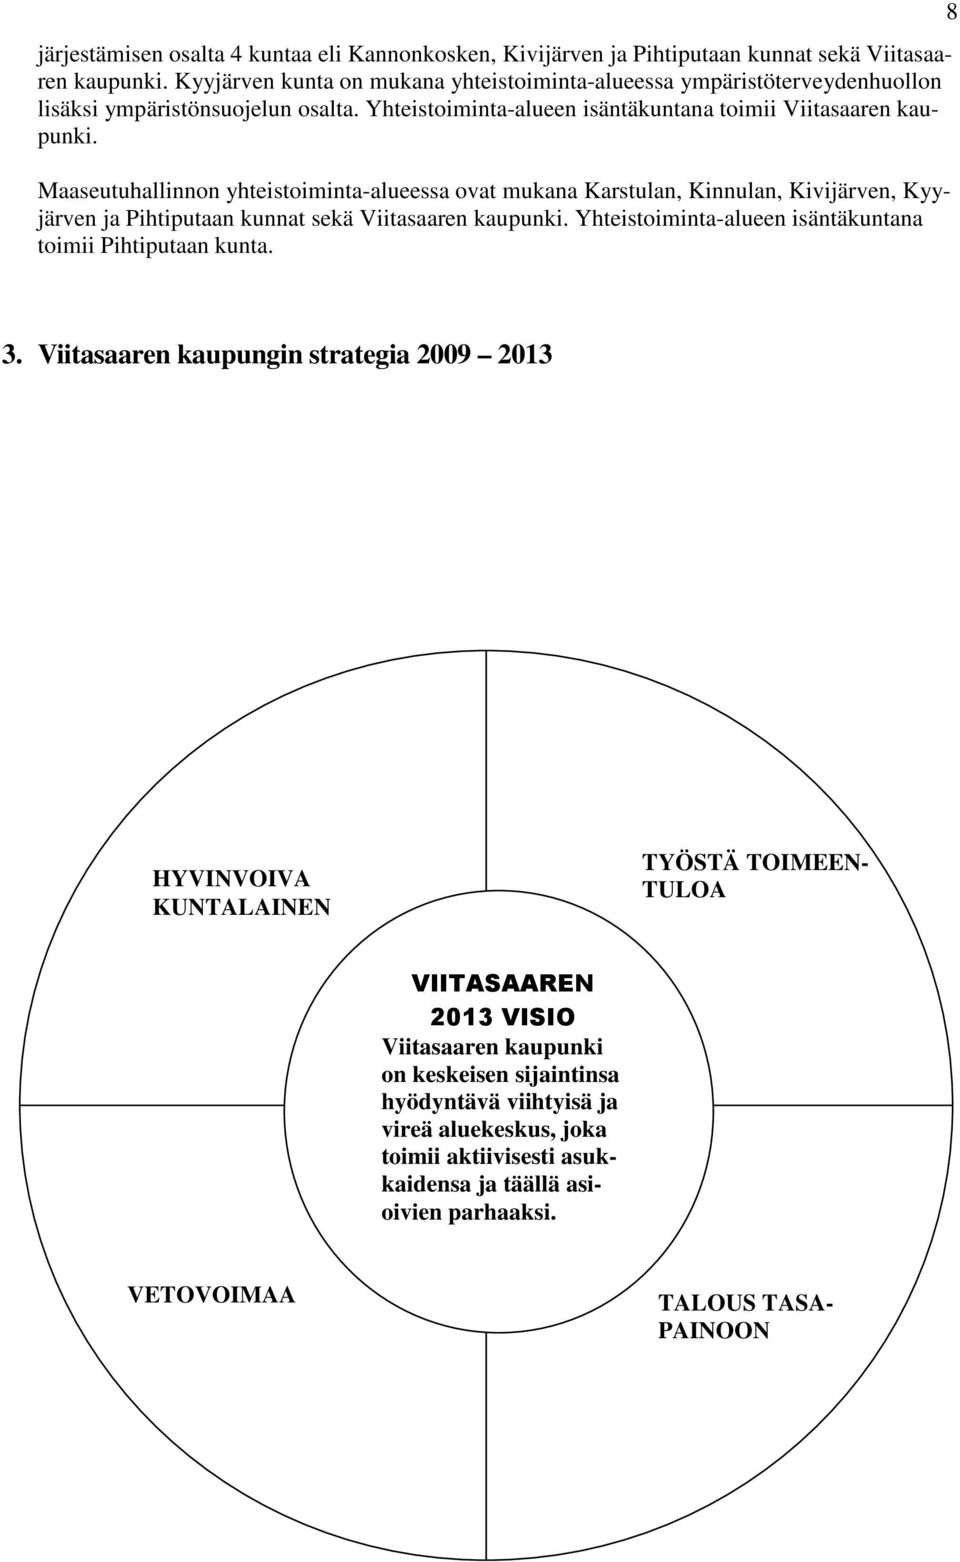 Maaseutuhallinnon yhteistoiminta-alueessa ovat mukana Karstulan, Kinnulan, Kivijärven, Kyyjärven ja Pihtiputaan kunnat sekä Viitasaaren kaupunki.